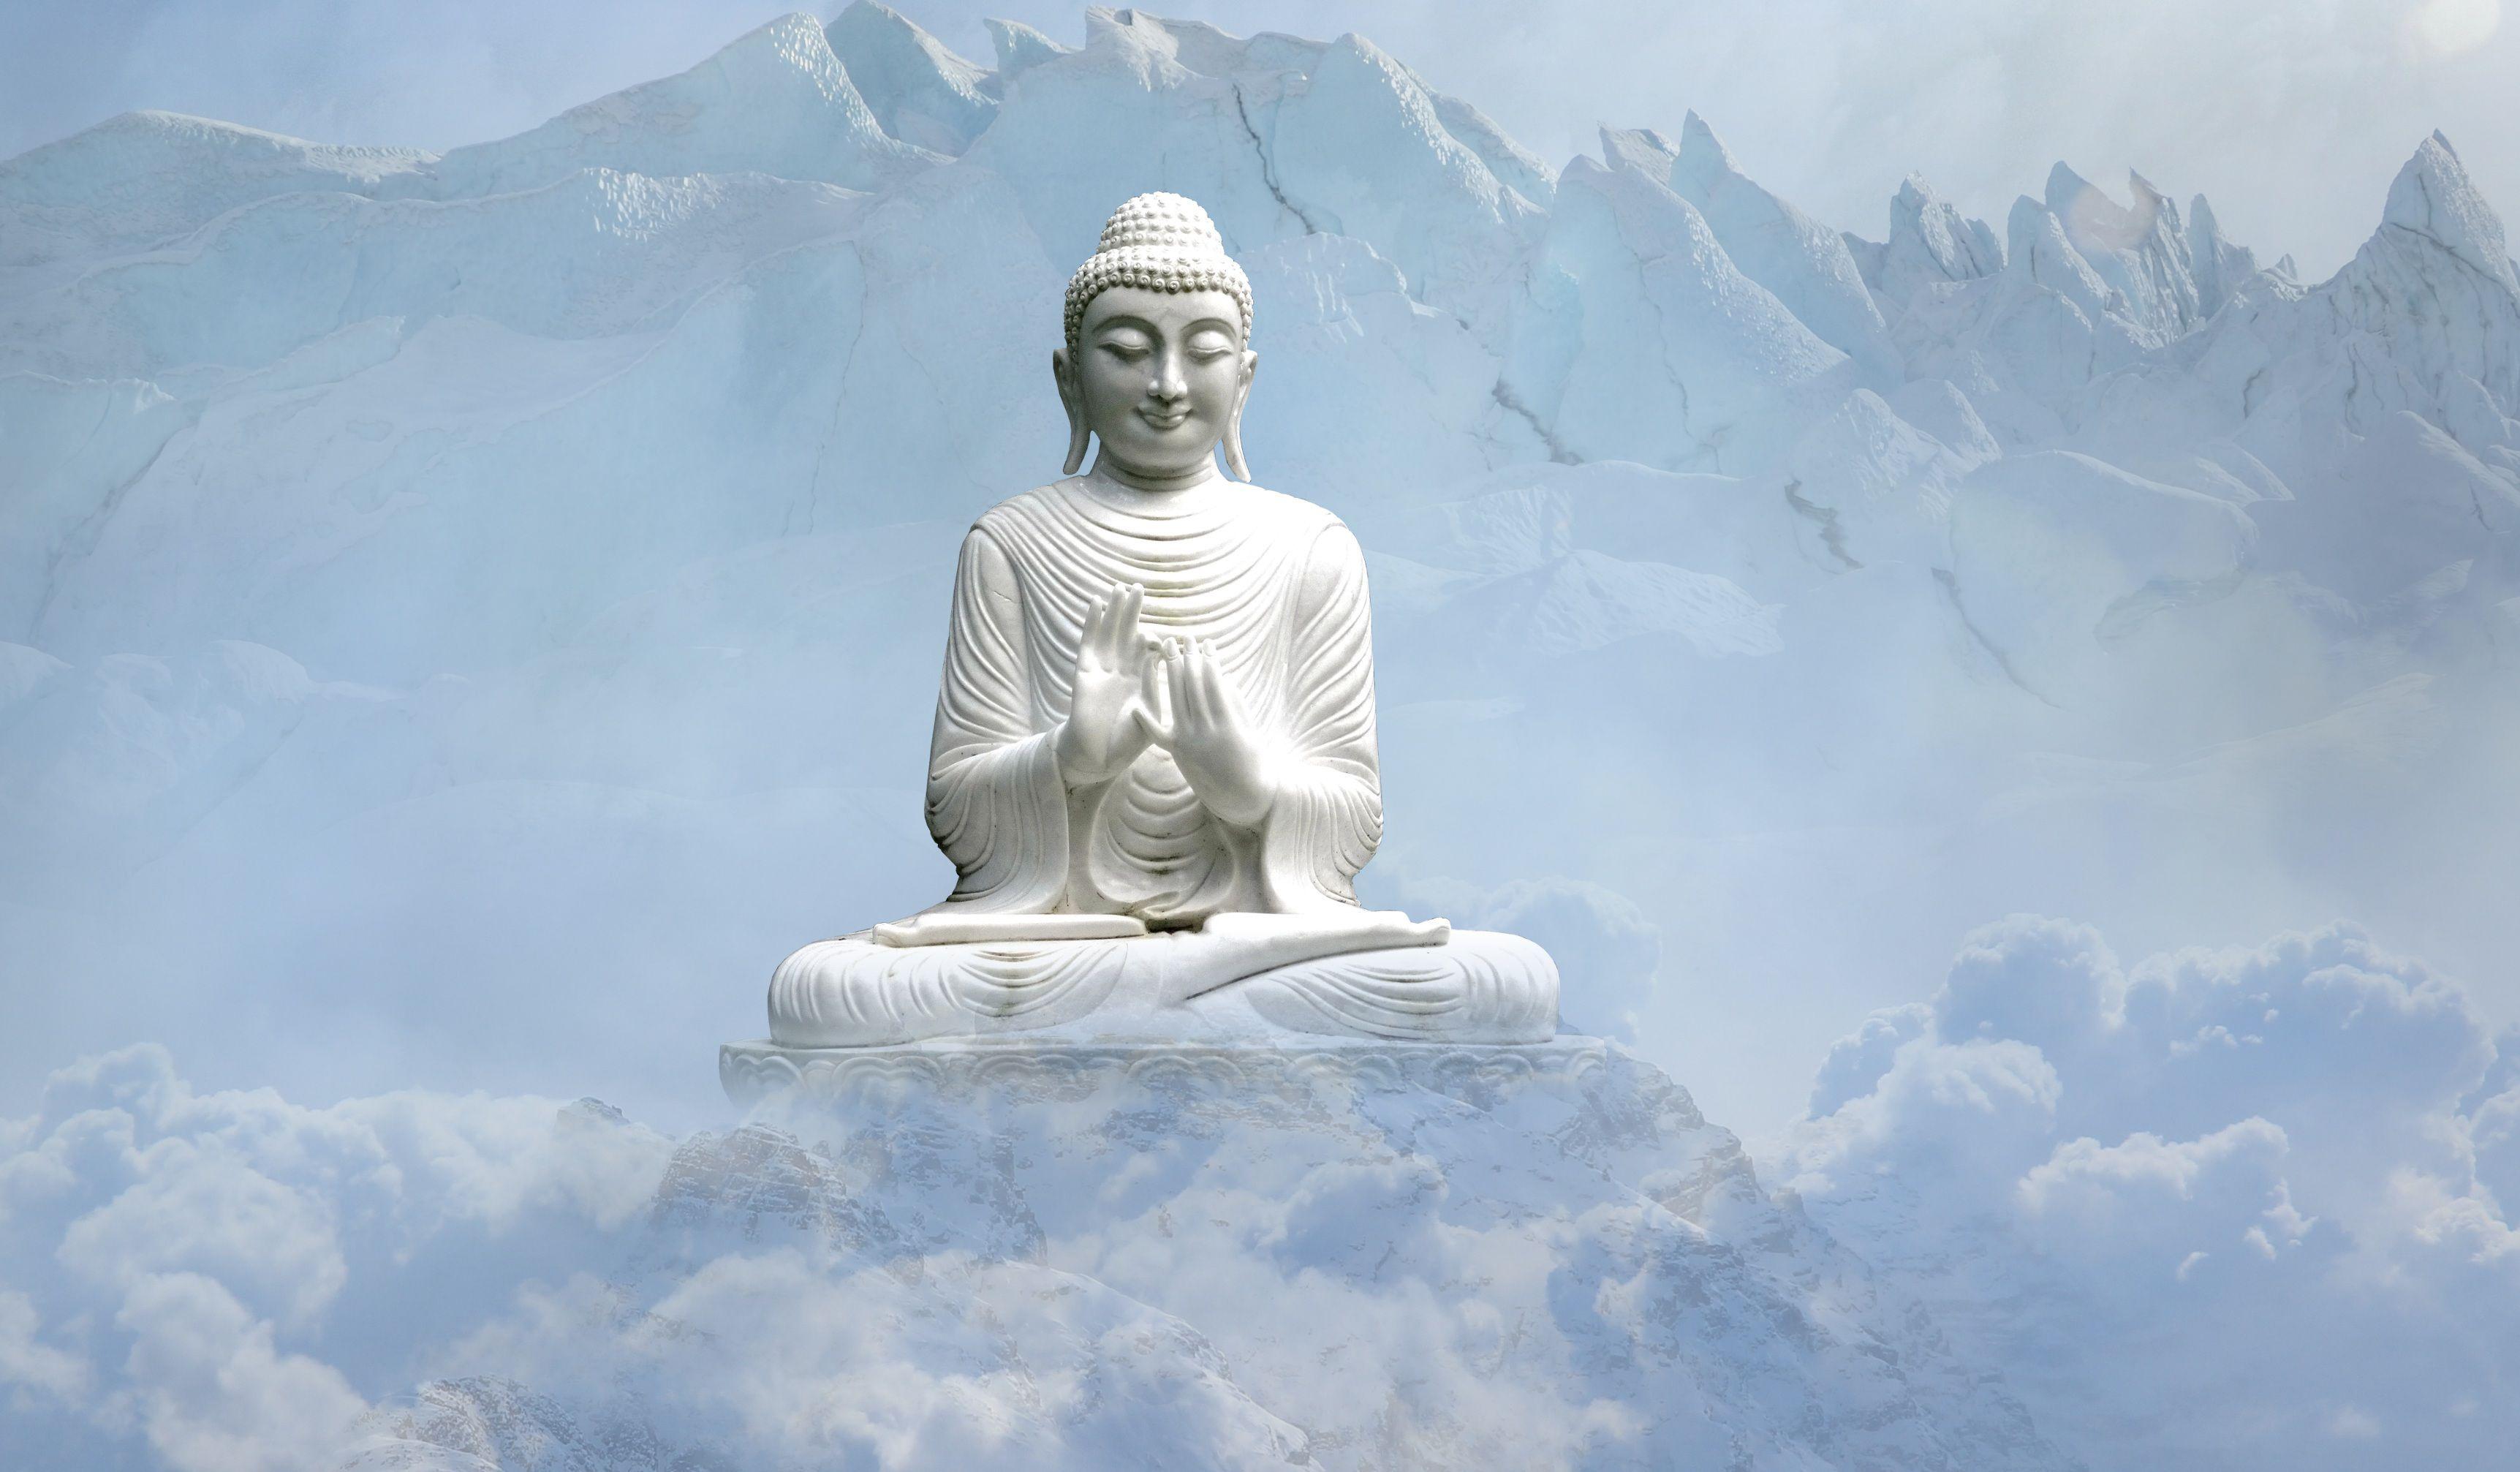 Hòa mình vào vẻ đẹp của ảnh Phật đẹp để cảm nhận sự thanh thản và yên bình. Hình ảnh này sẽ giúp bạn tìm thấy sự thanh thản và an lạc trong tâm hồn.